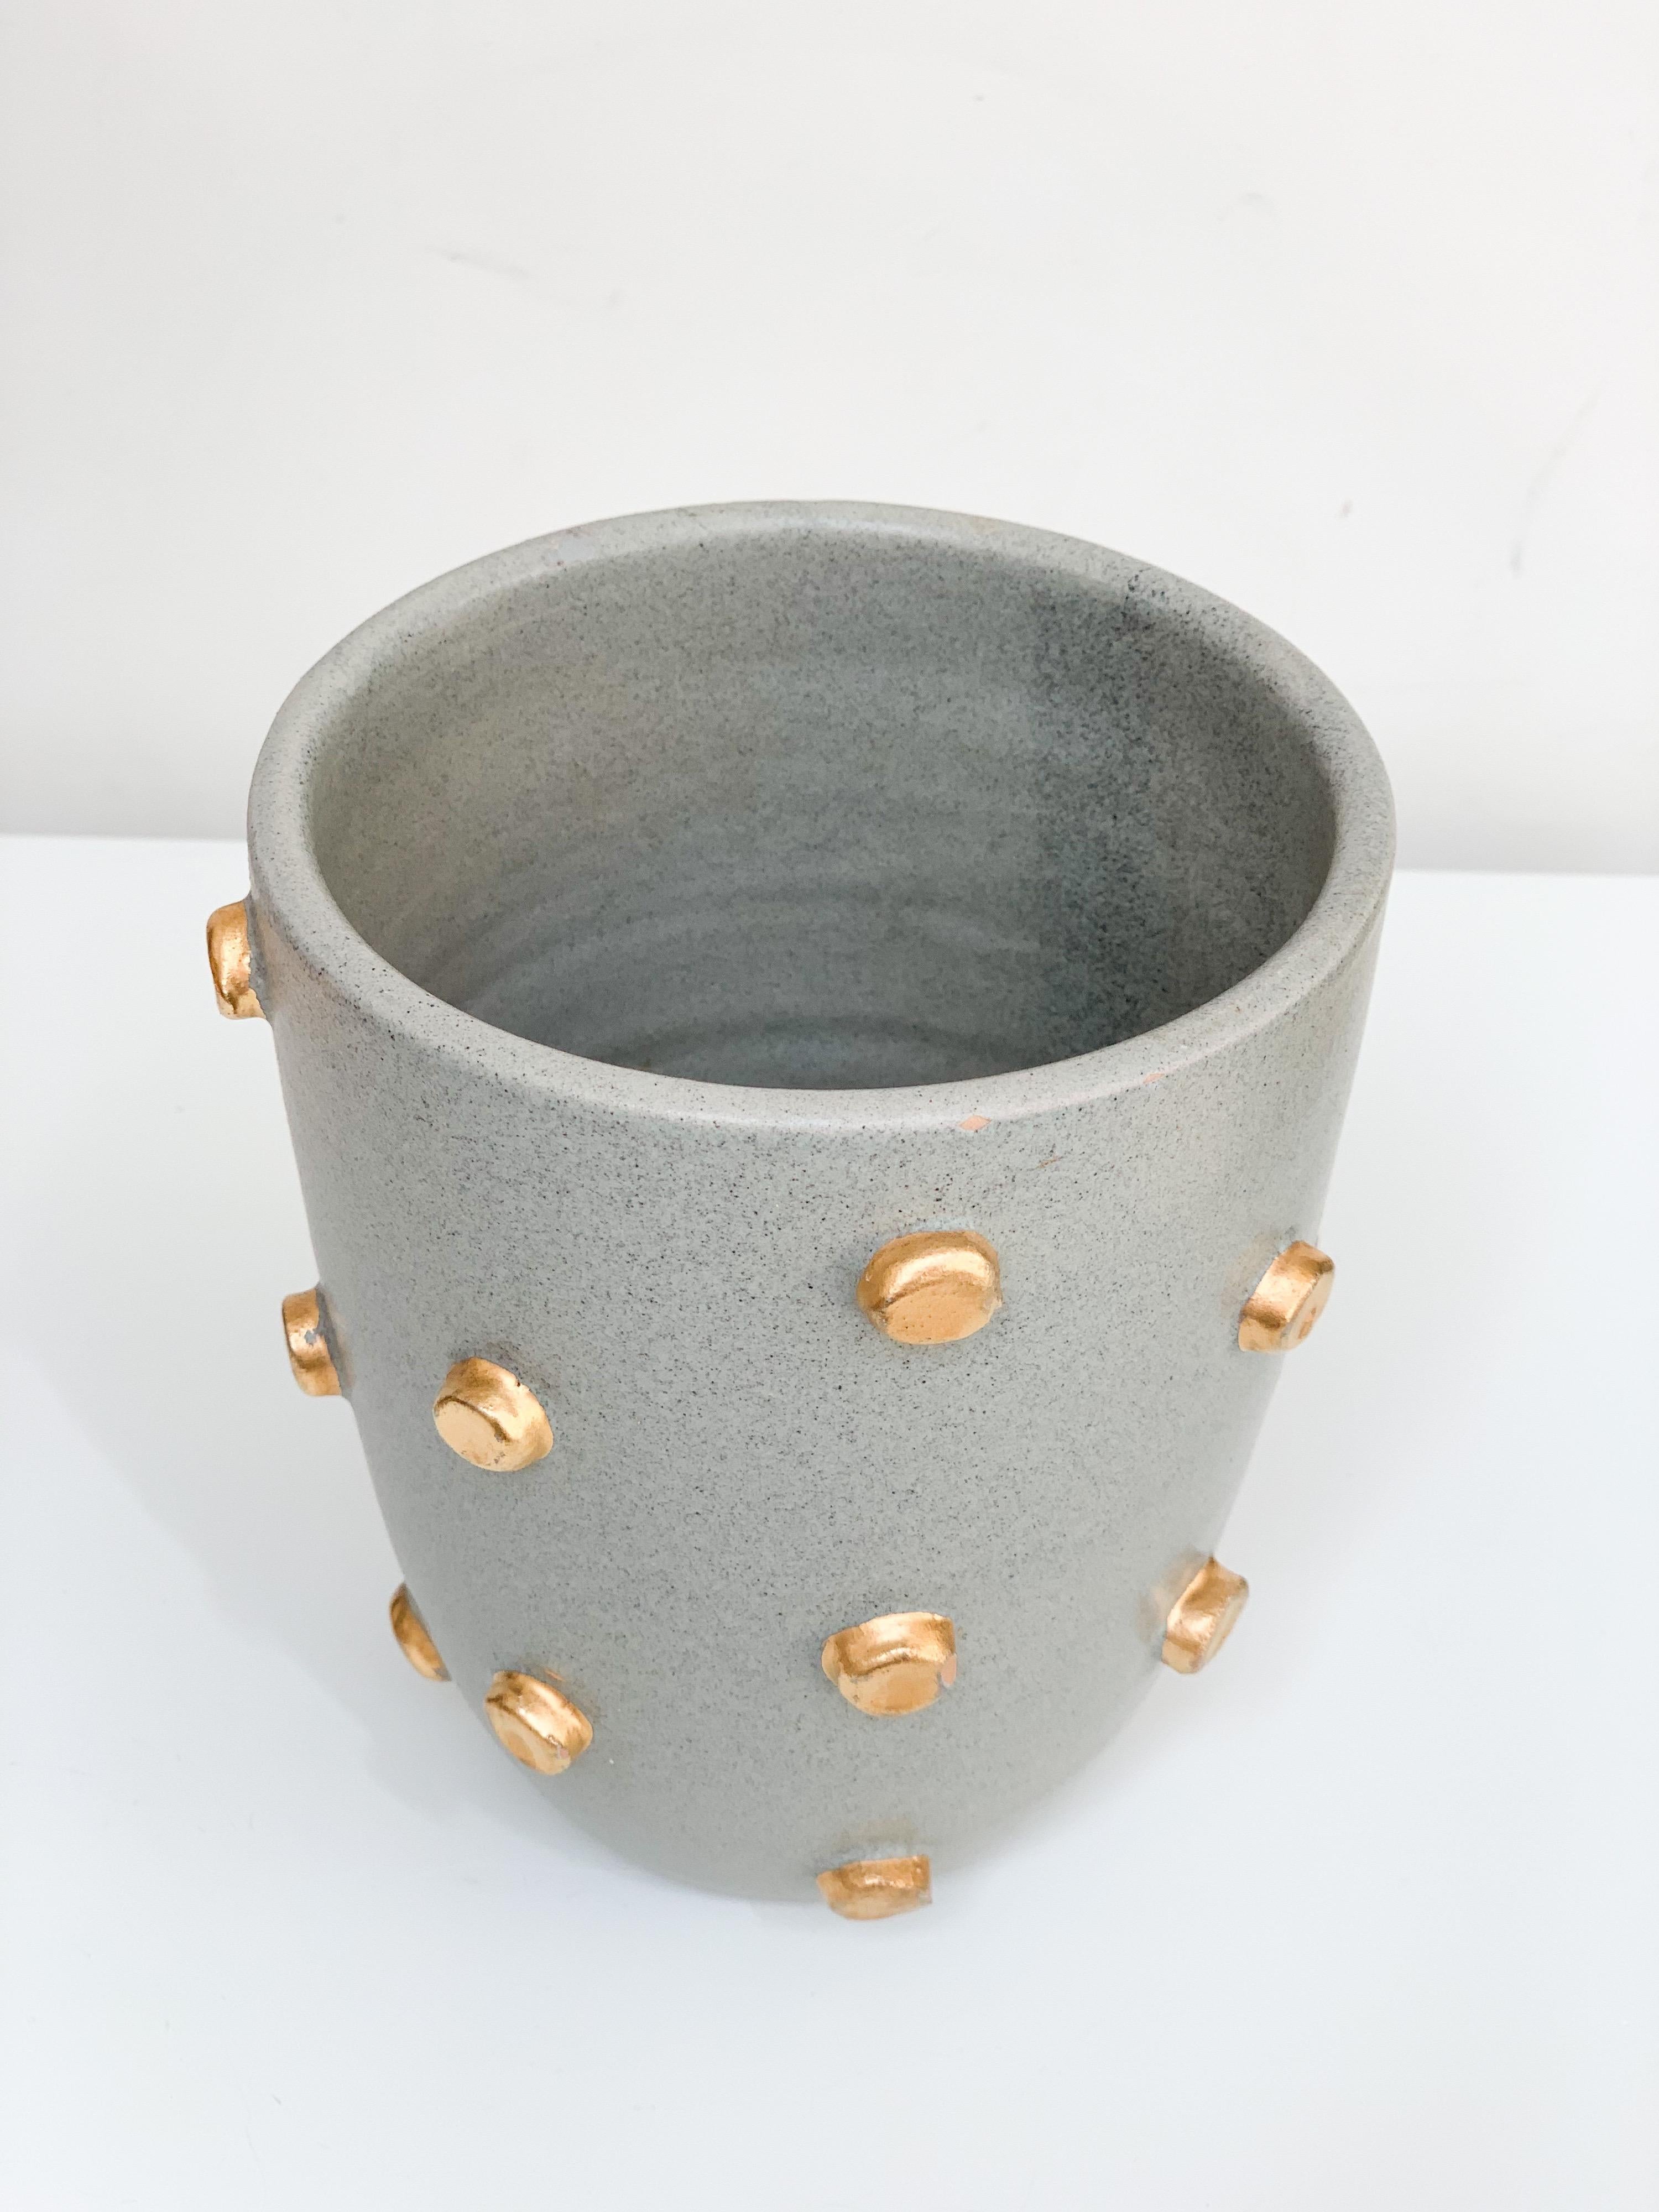 Bitossi Vase, Ceramic, Gray and Gold Hobnails, Signed 1